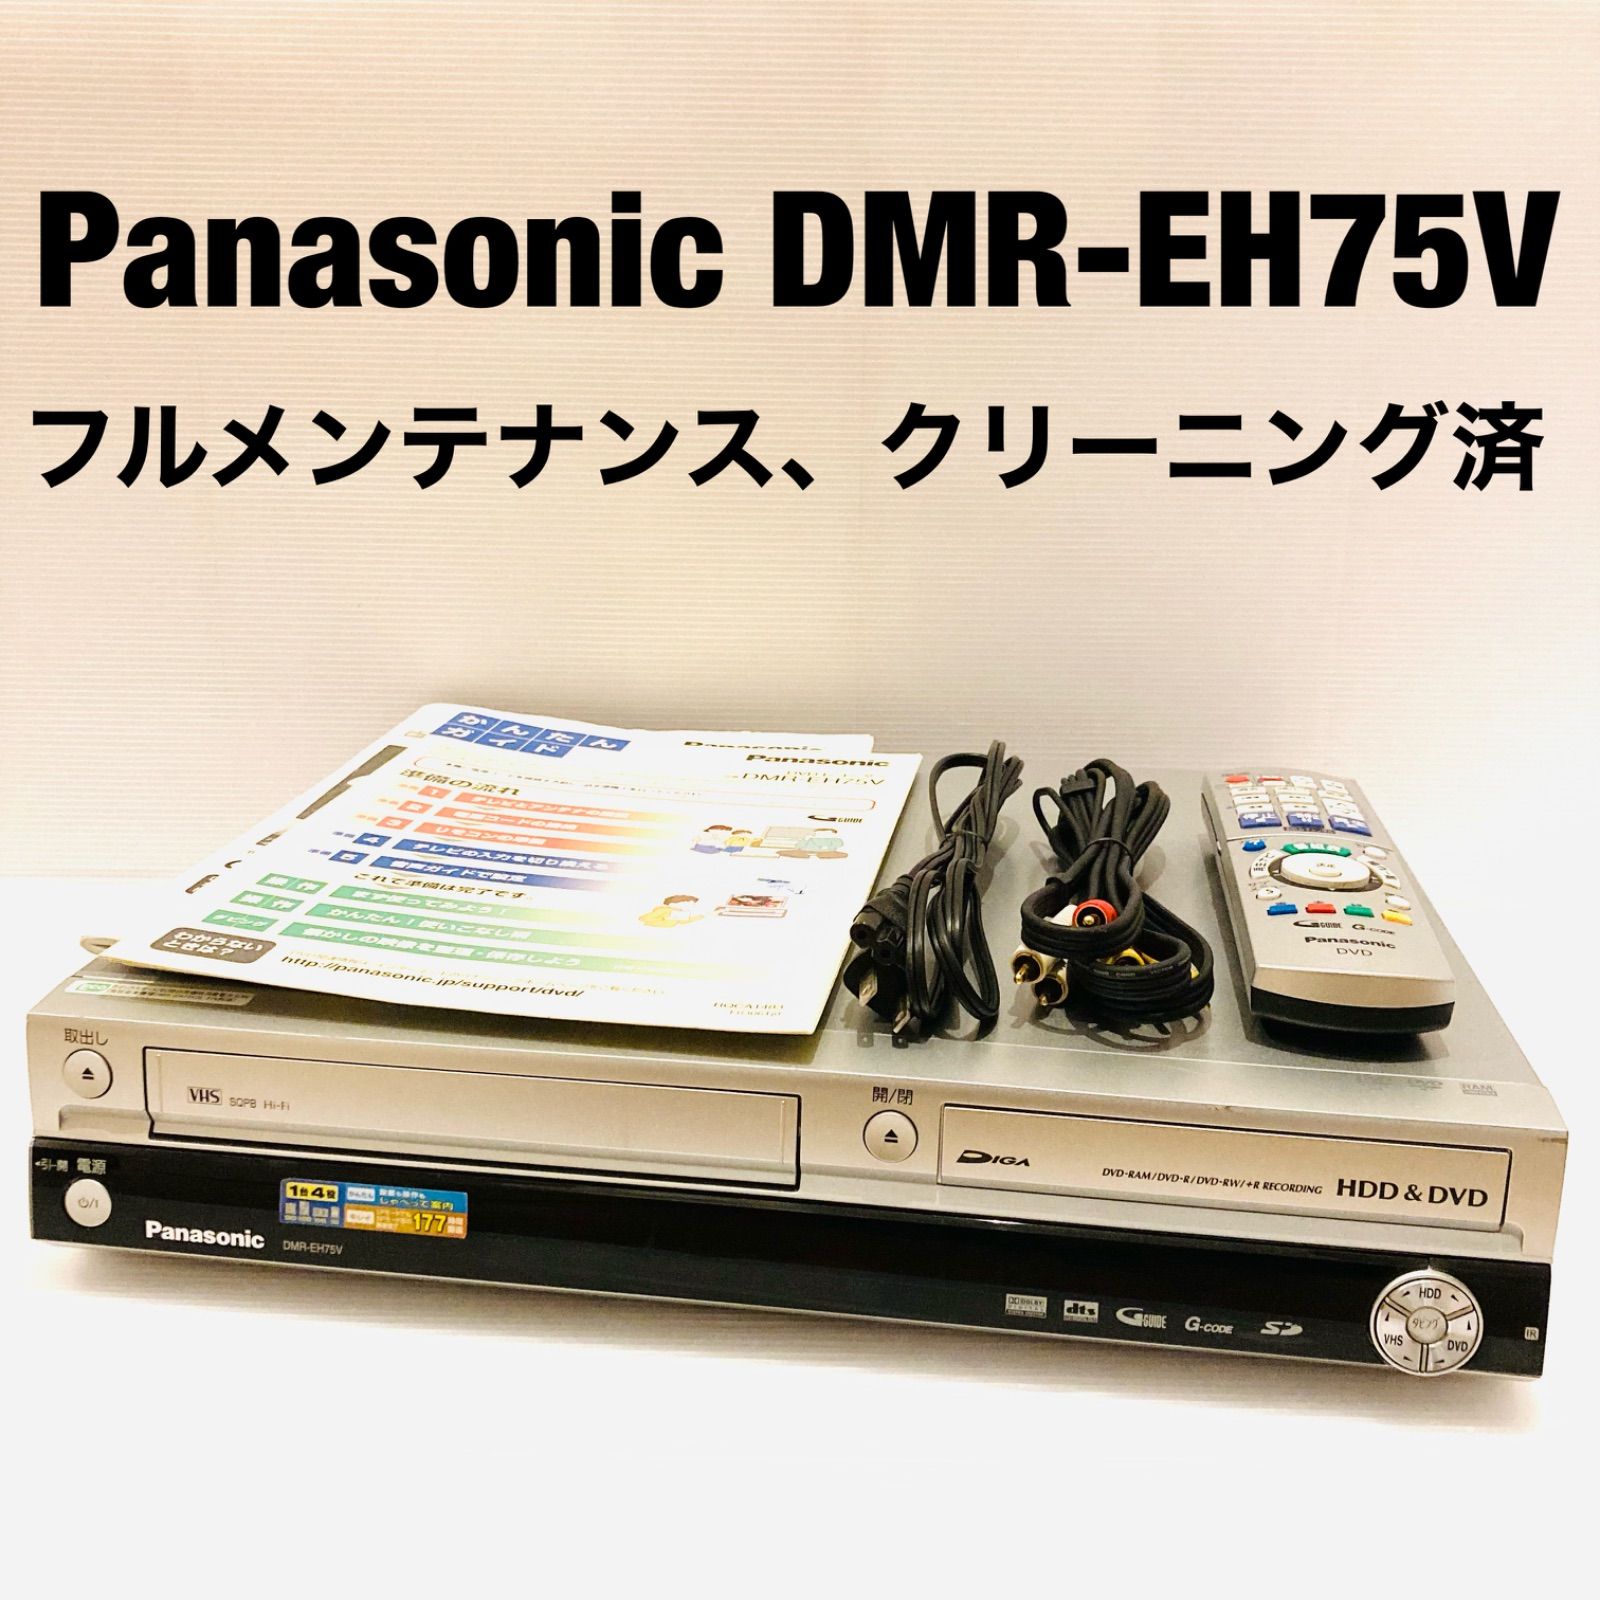 VHS.DVD.HDD 各メディア間相互ダビング可能 Panasonic DMR-EH75V-S 未